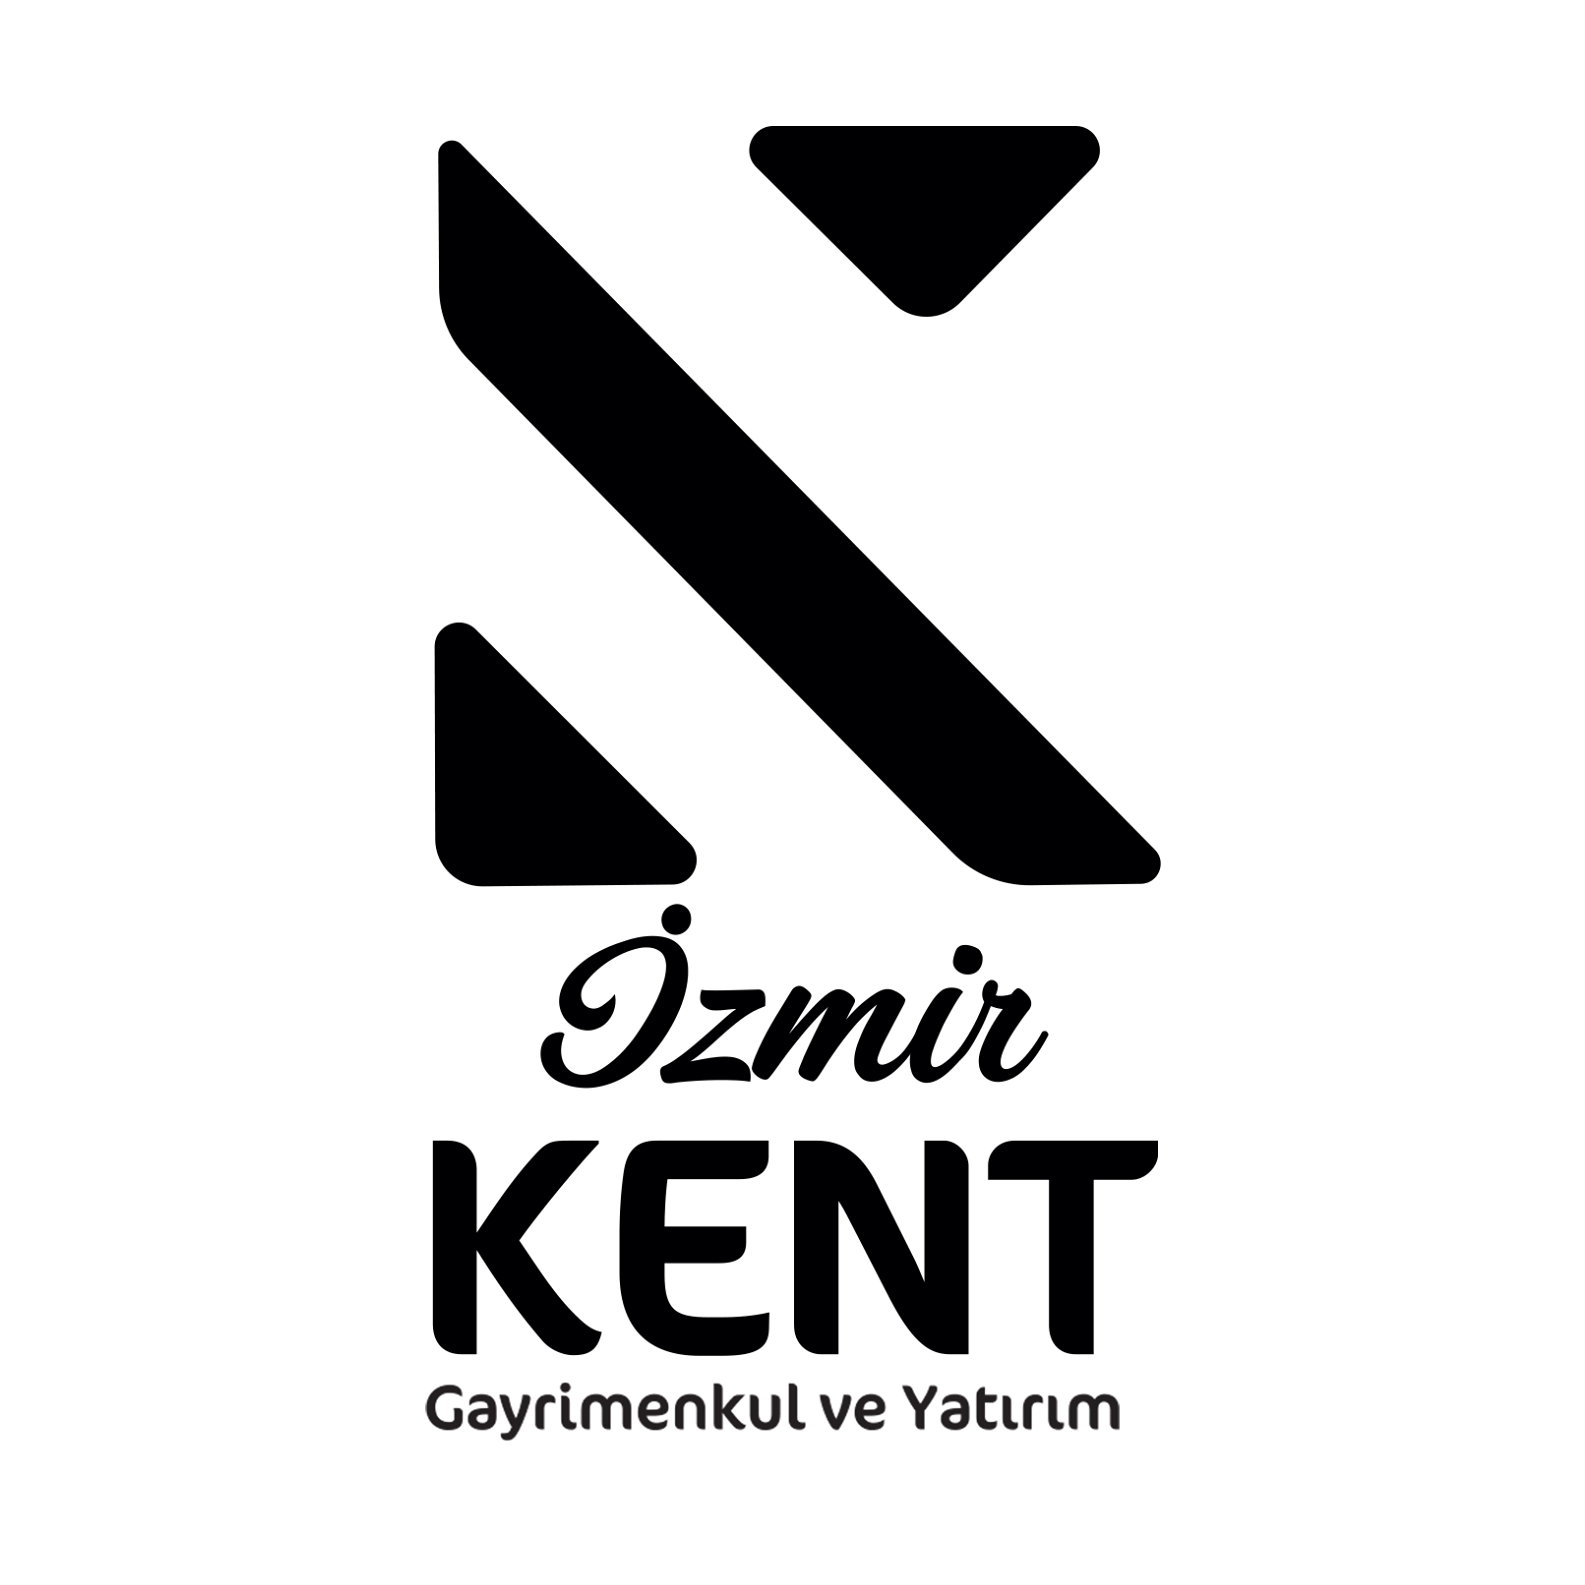 İzmir Kent Gayrimenkul ve Yatırım